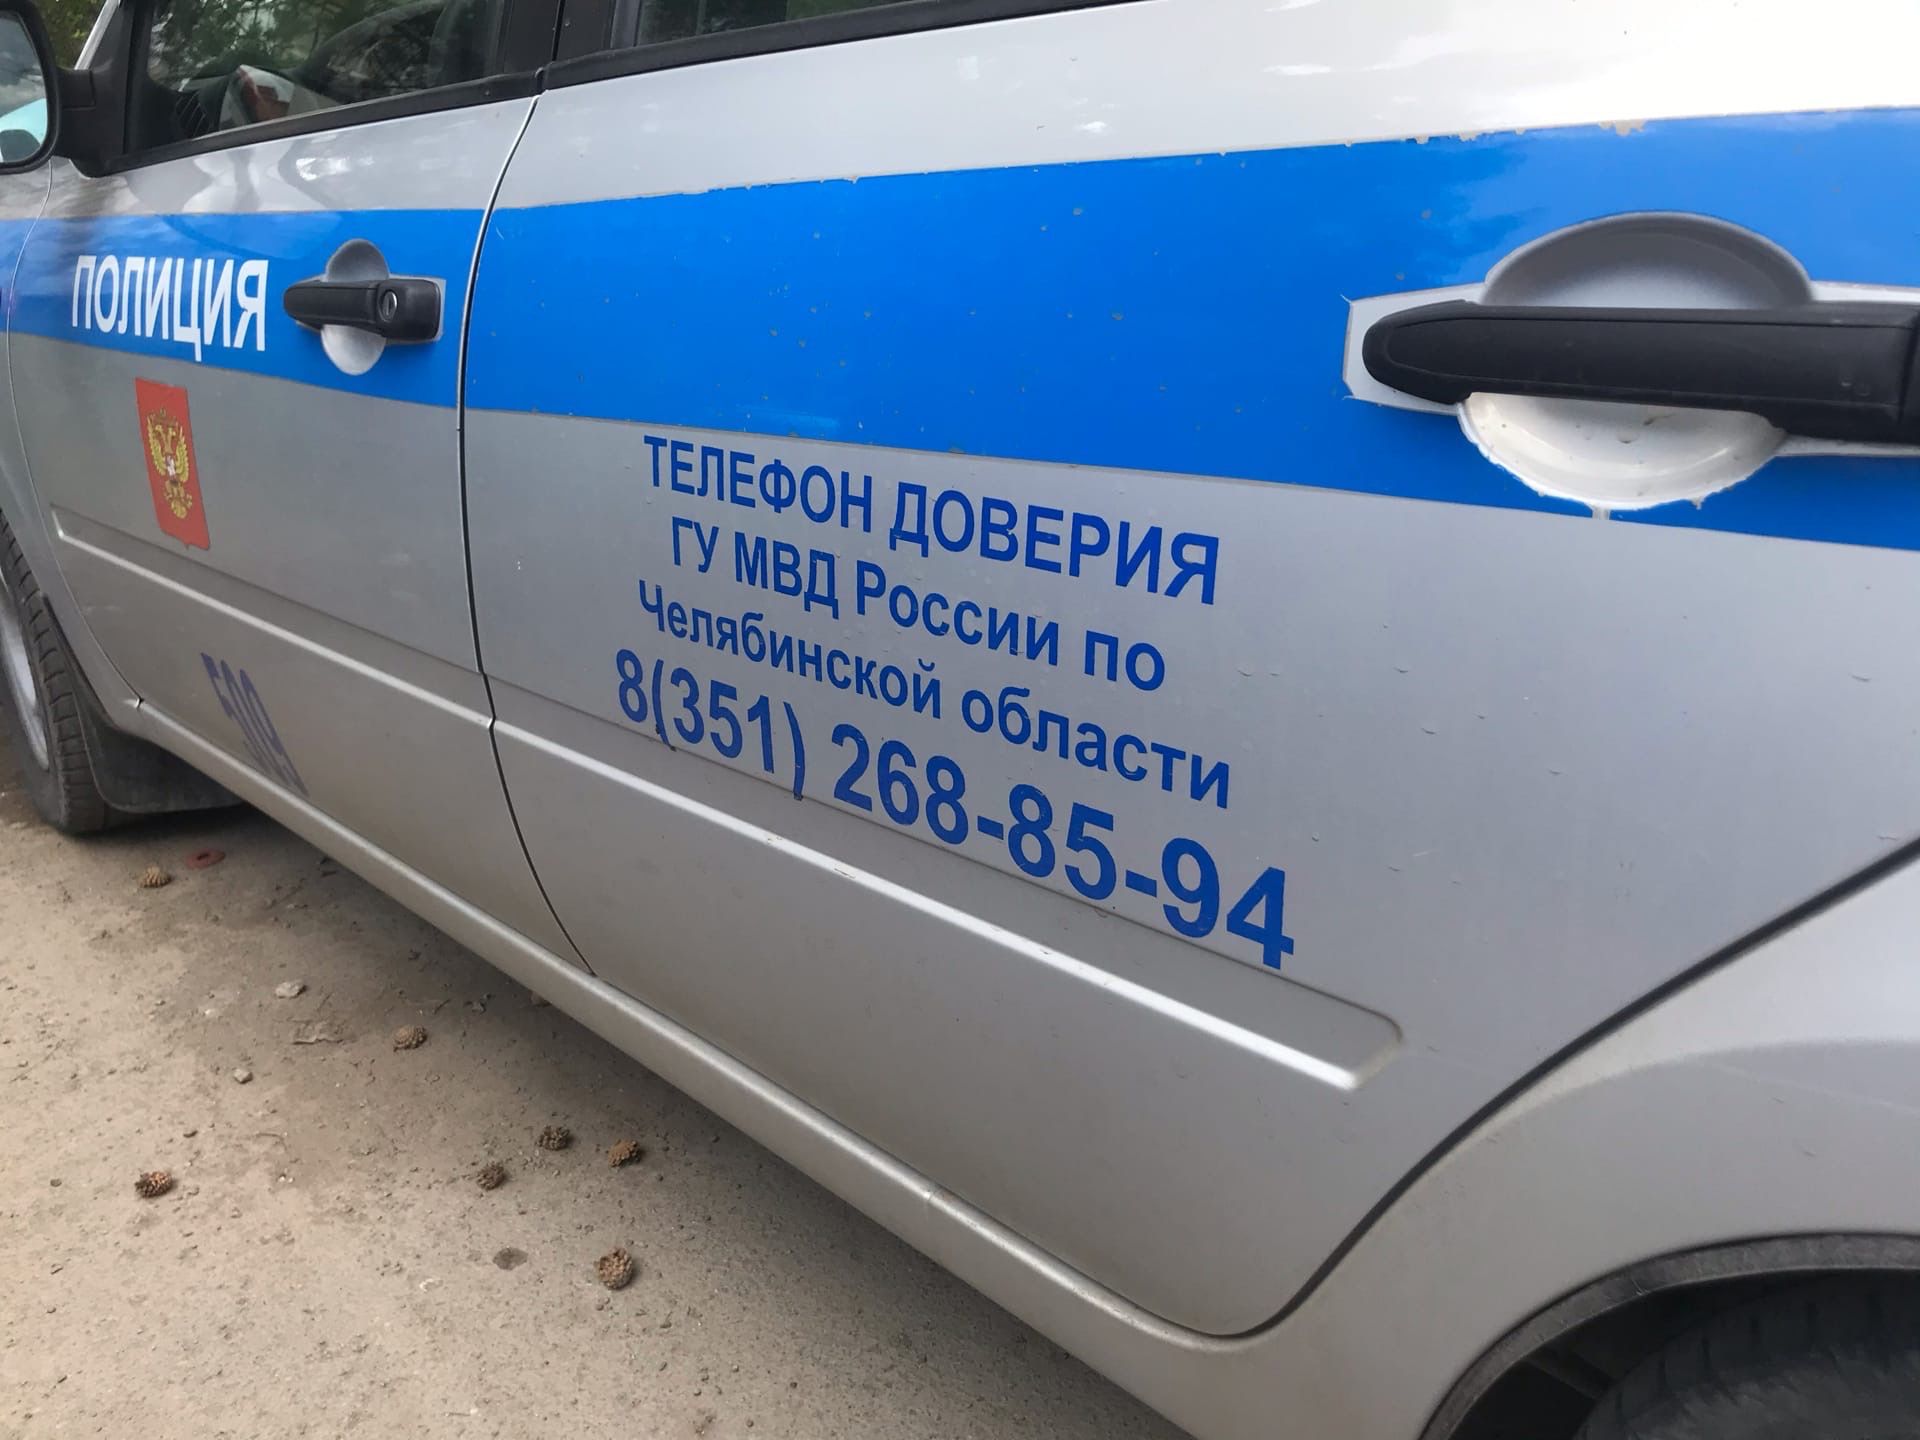 Автопогрузчик наехал на рабочих на одном из предприятий Челябинска